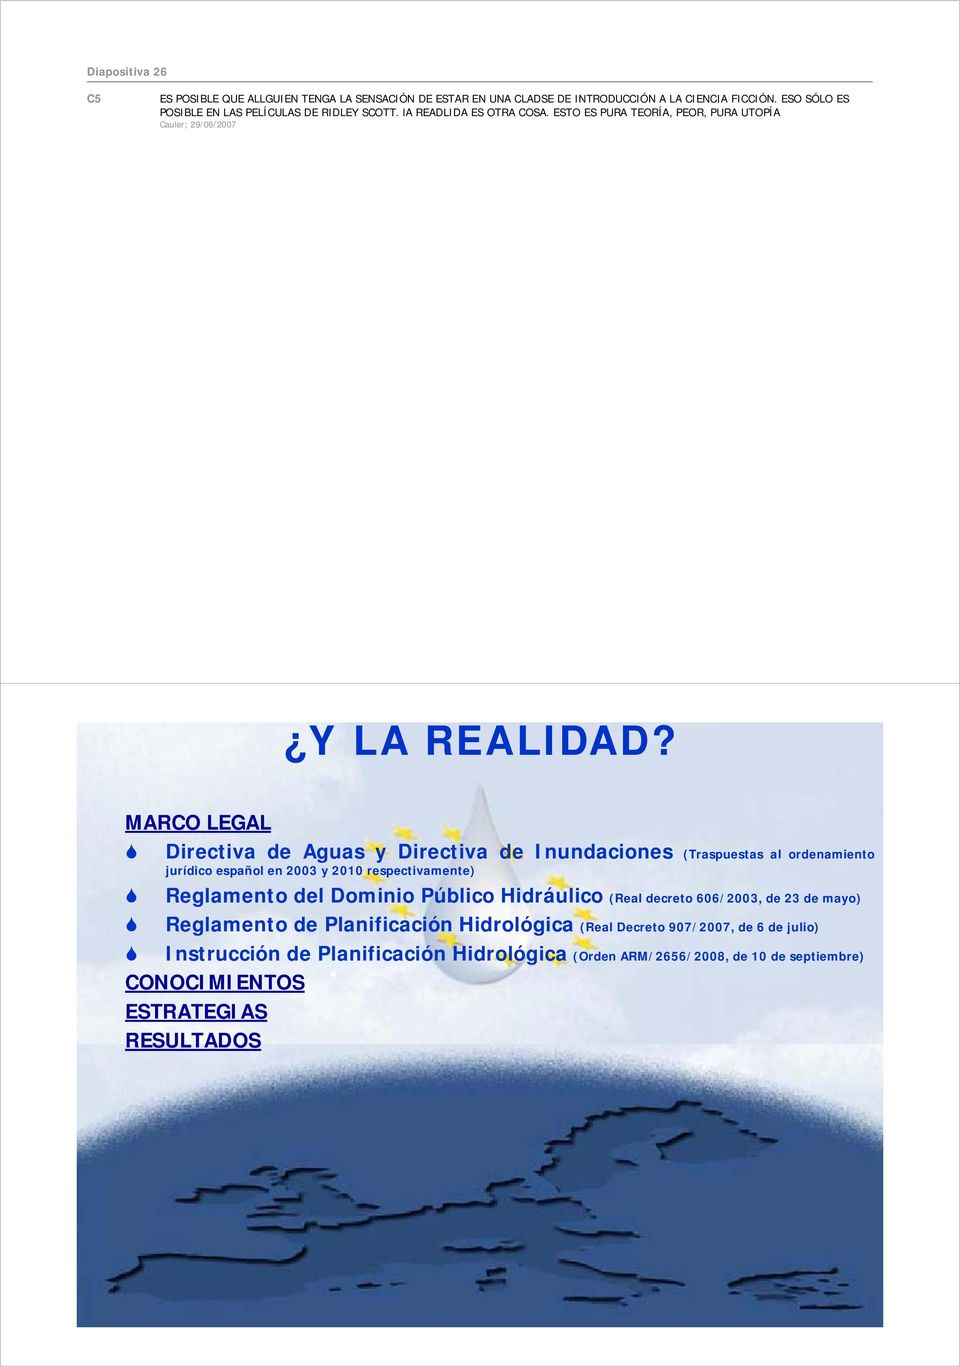 MARCO LEGAL Directiva de Aguas y Directiva de Inundaciones (Traspuestas al ordenamiento jurídico español en 2003 y 2010 respectivamente) Reglamento del Dominio Público